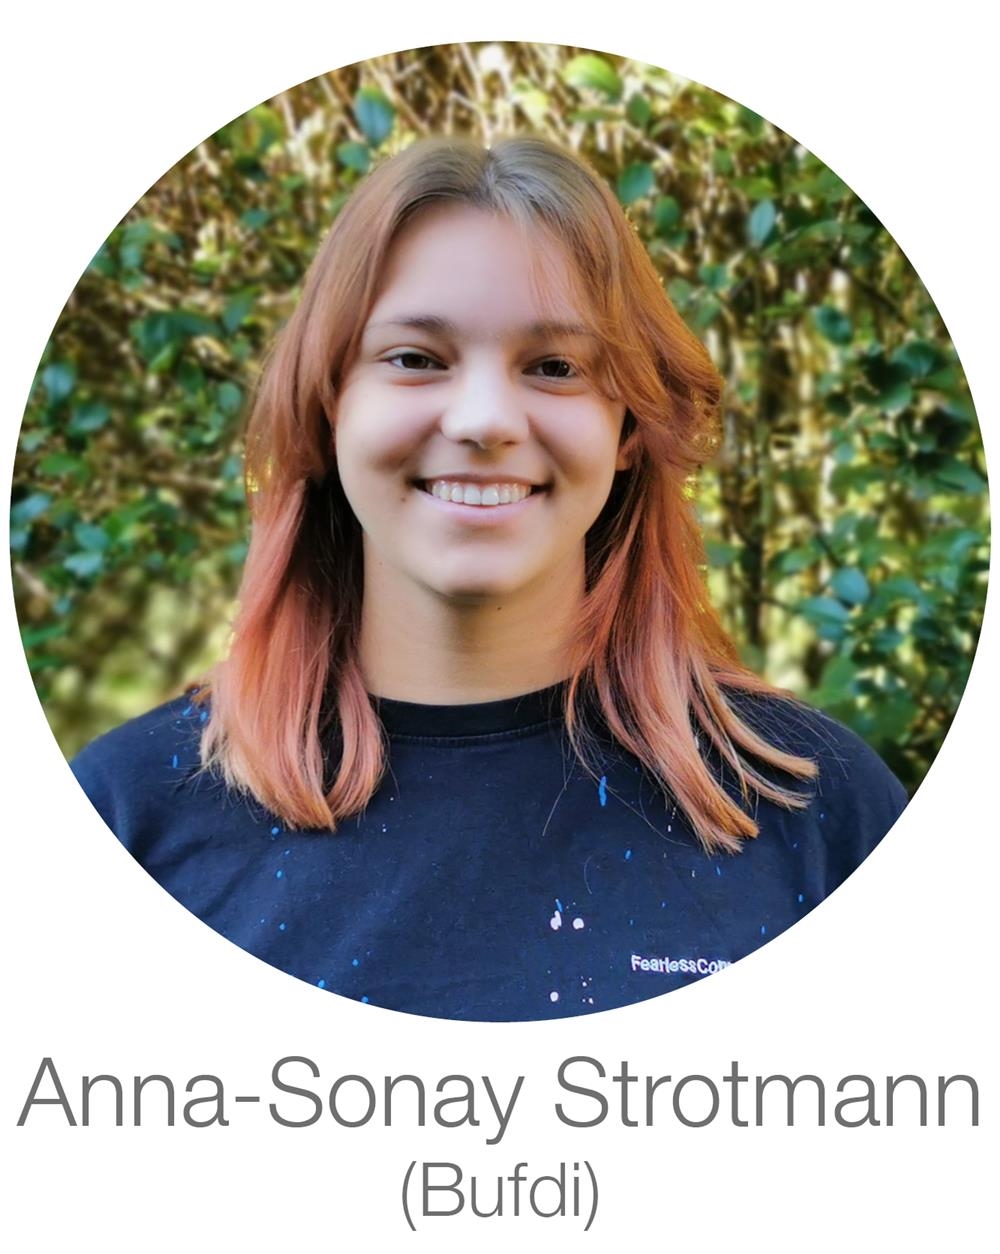 Anna-Sonay Strotmann